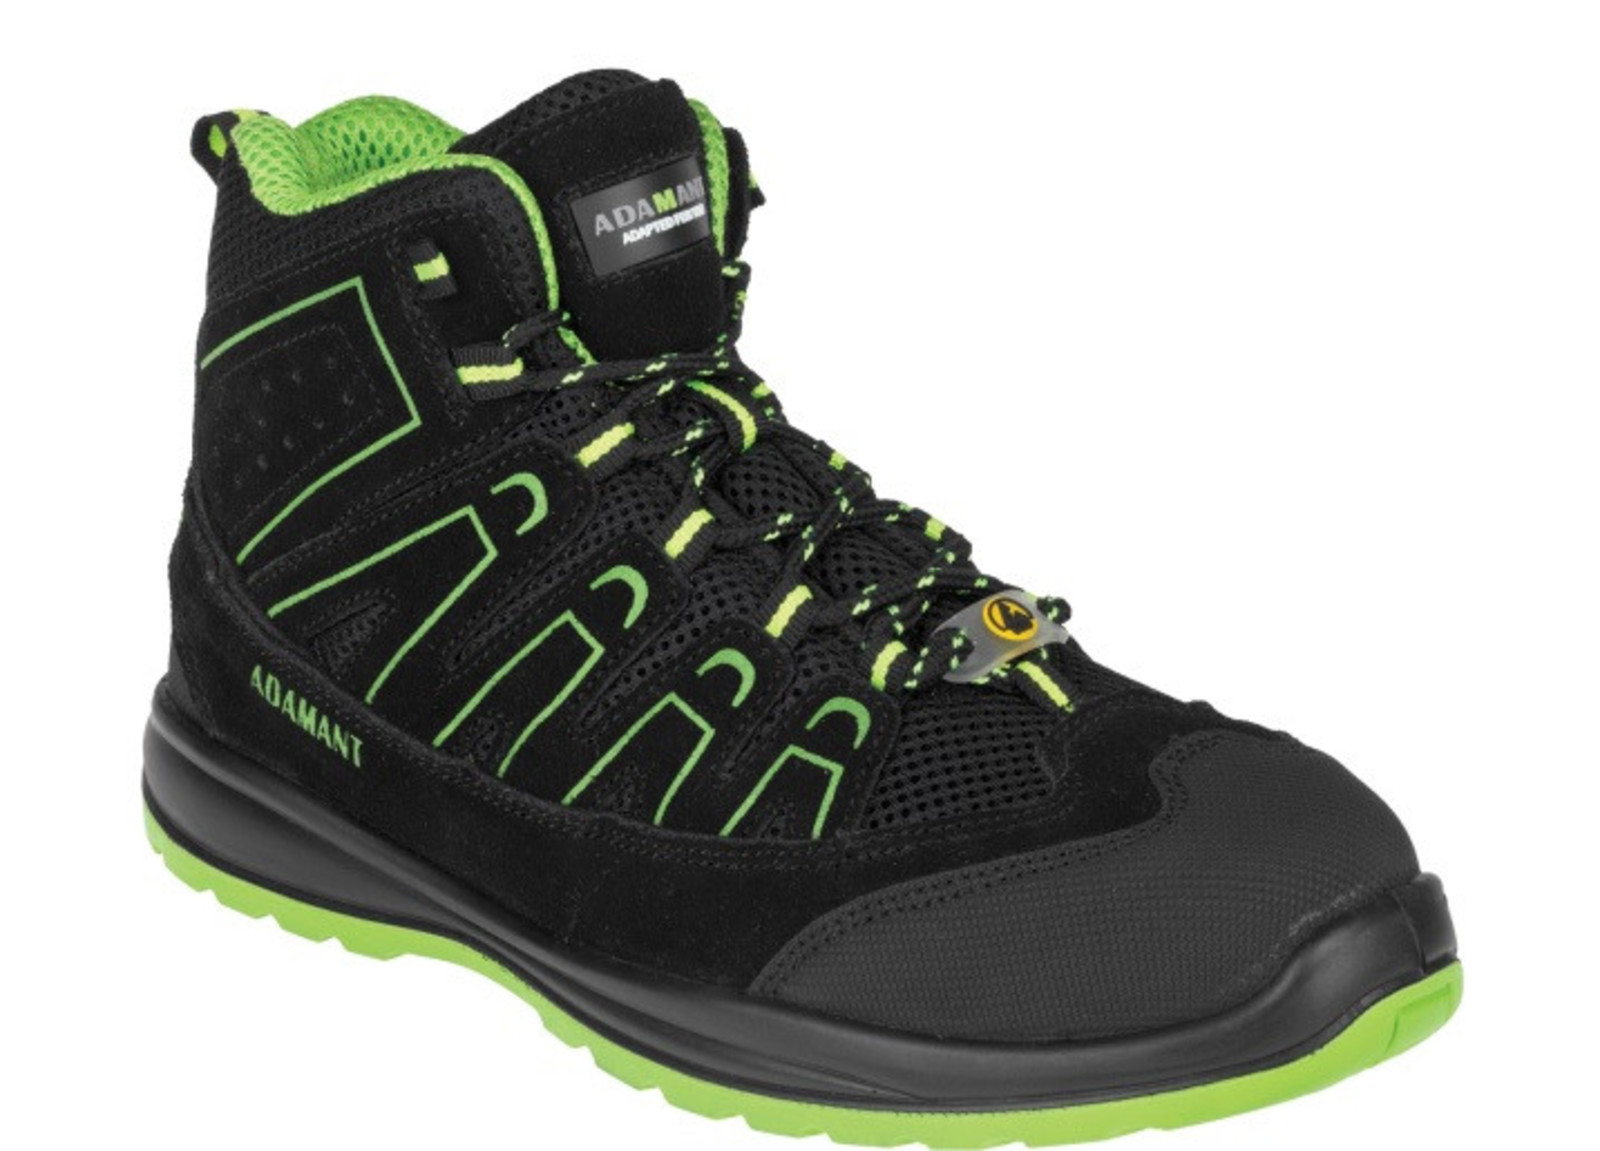 Bezpečnostná obuv Adamant Alegro S1P ESD - veľkosť: 41, farba: čierna/zelená